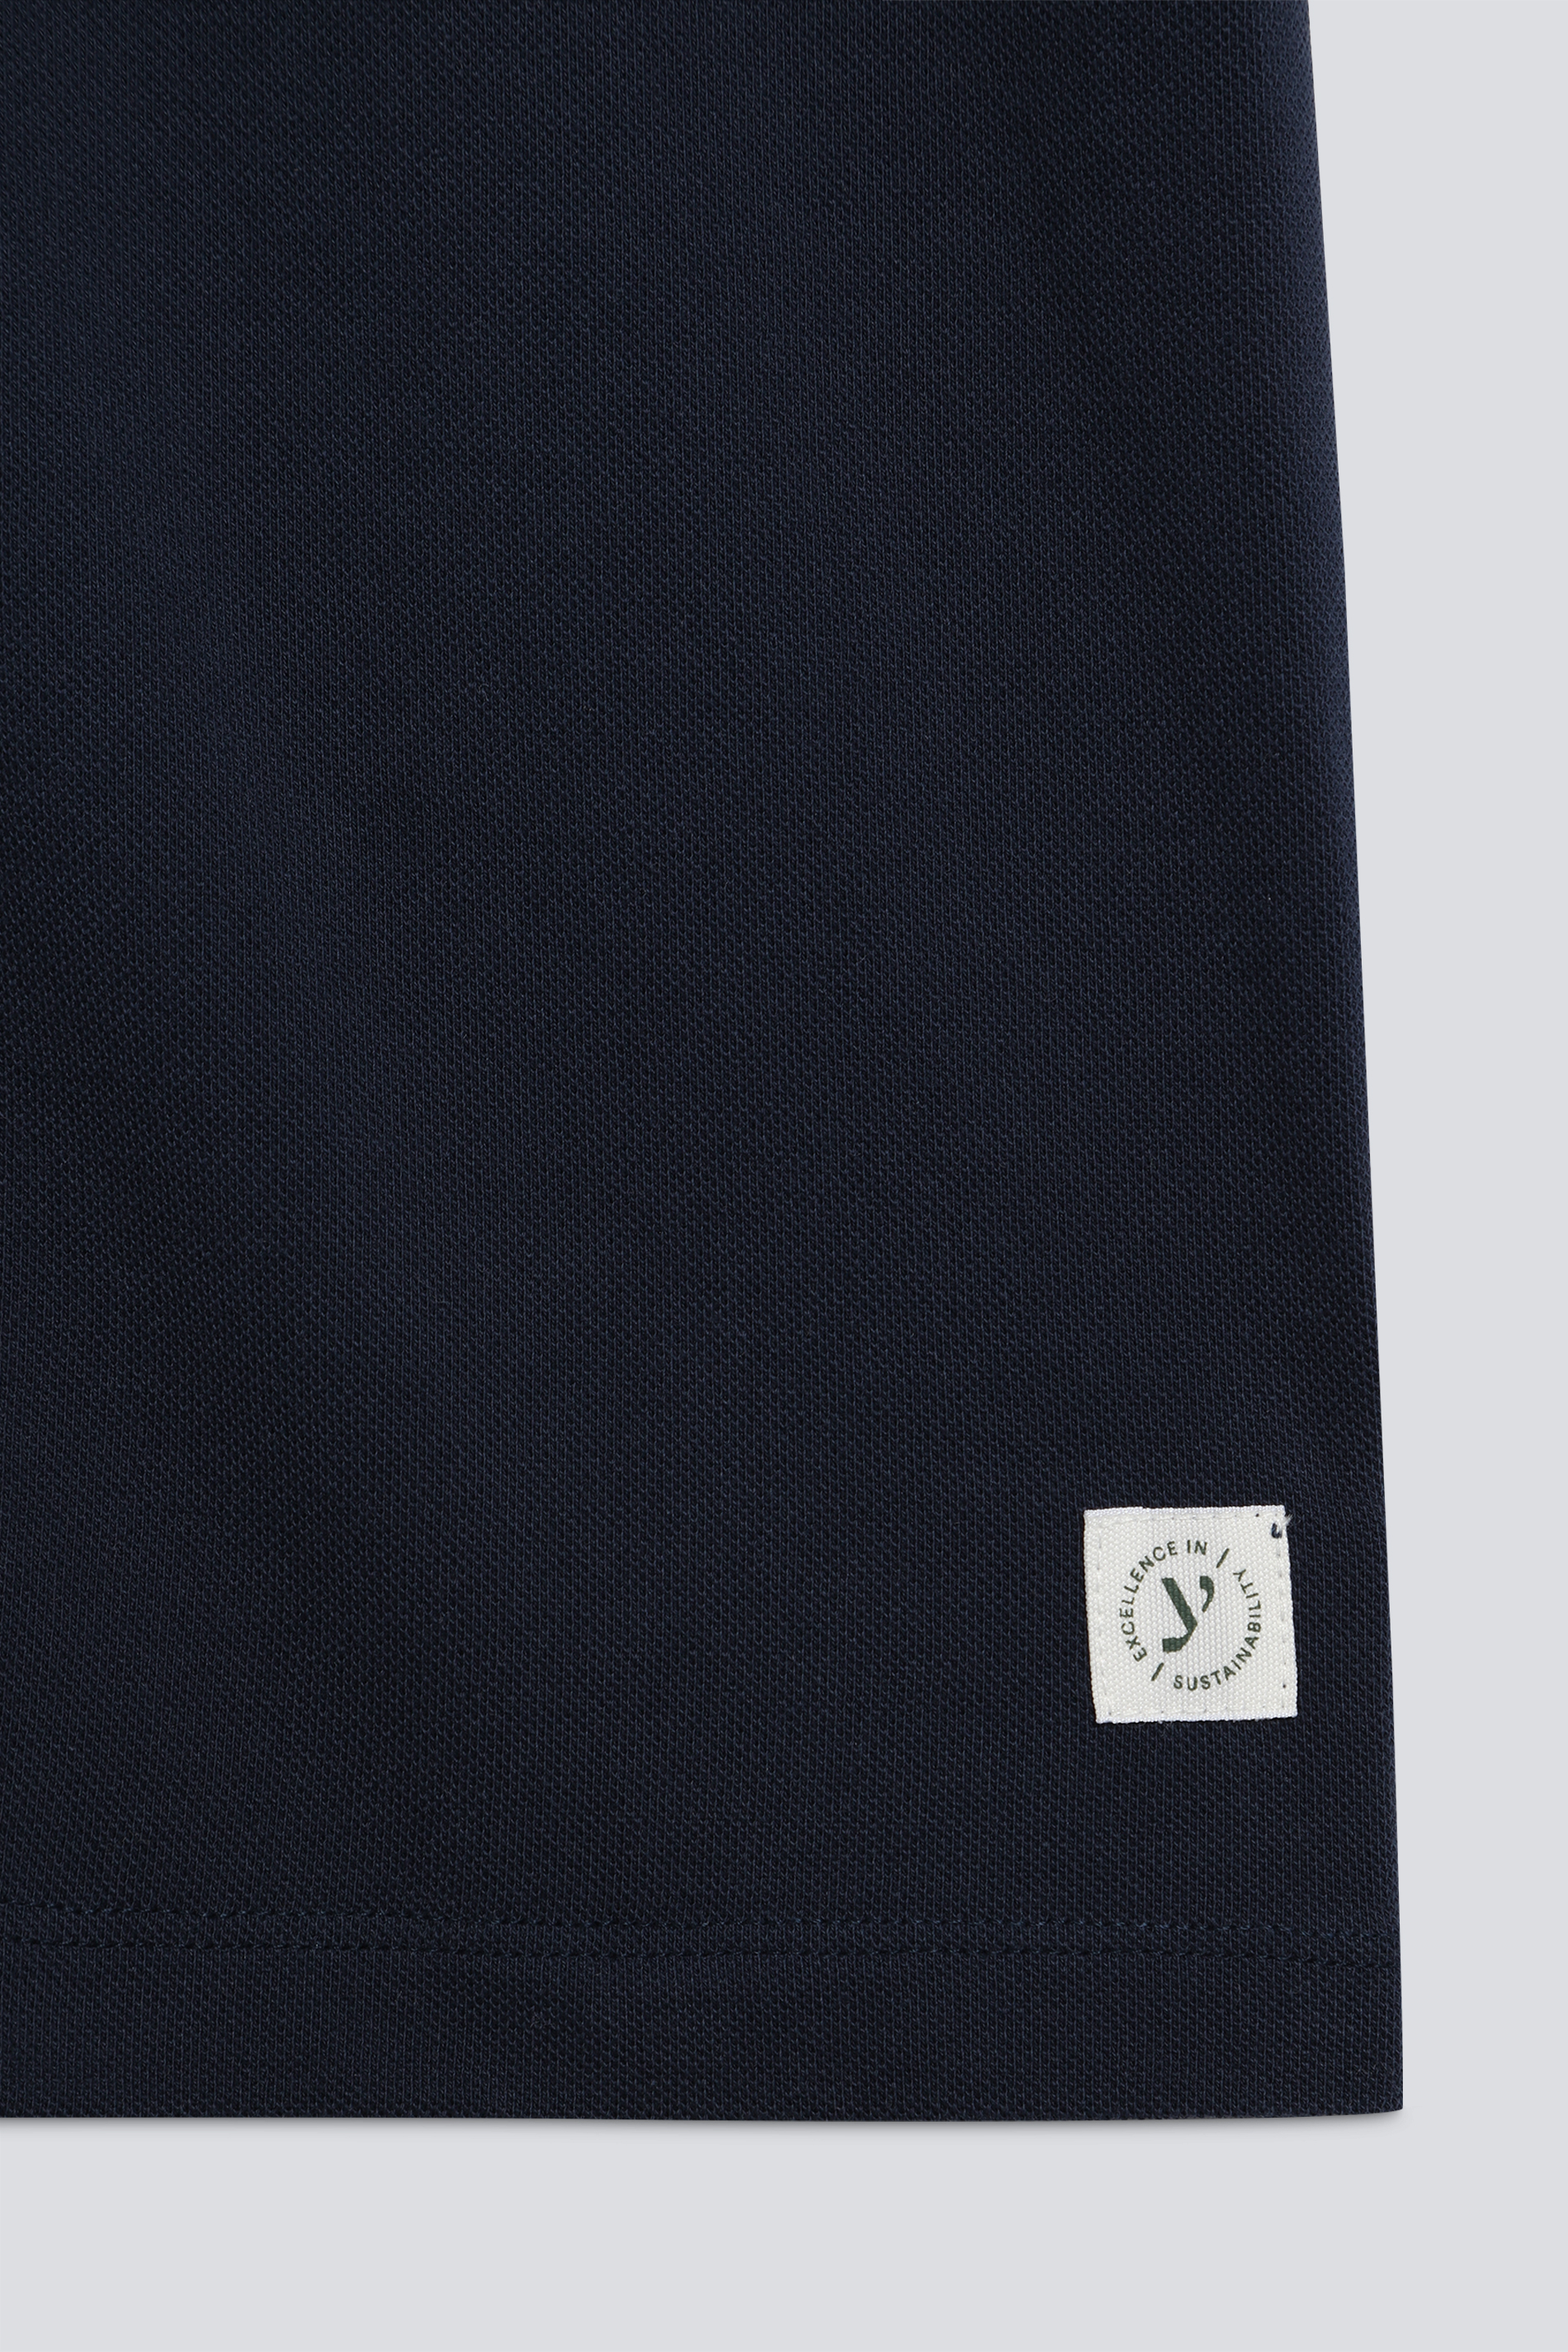 T-Shirt Serie Pique Cotone Detailansicht 01 | mey®